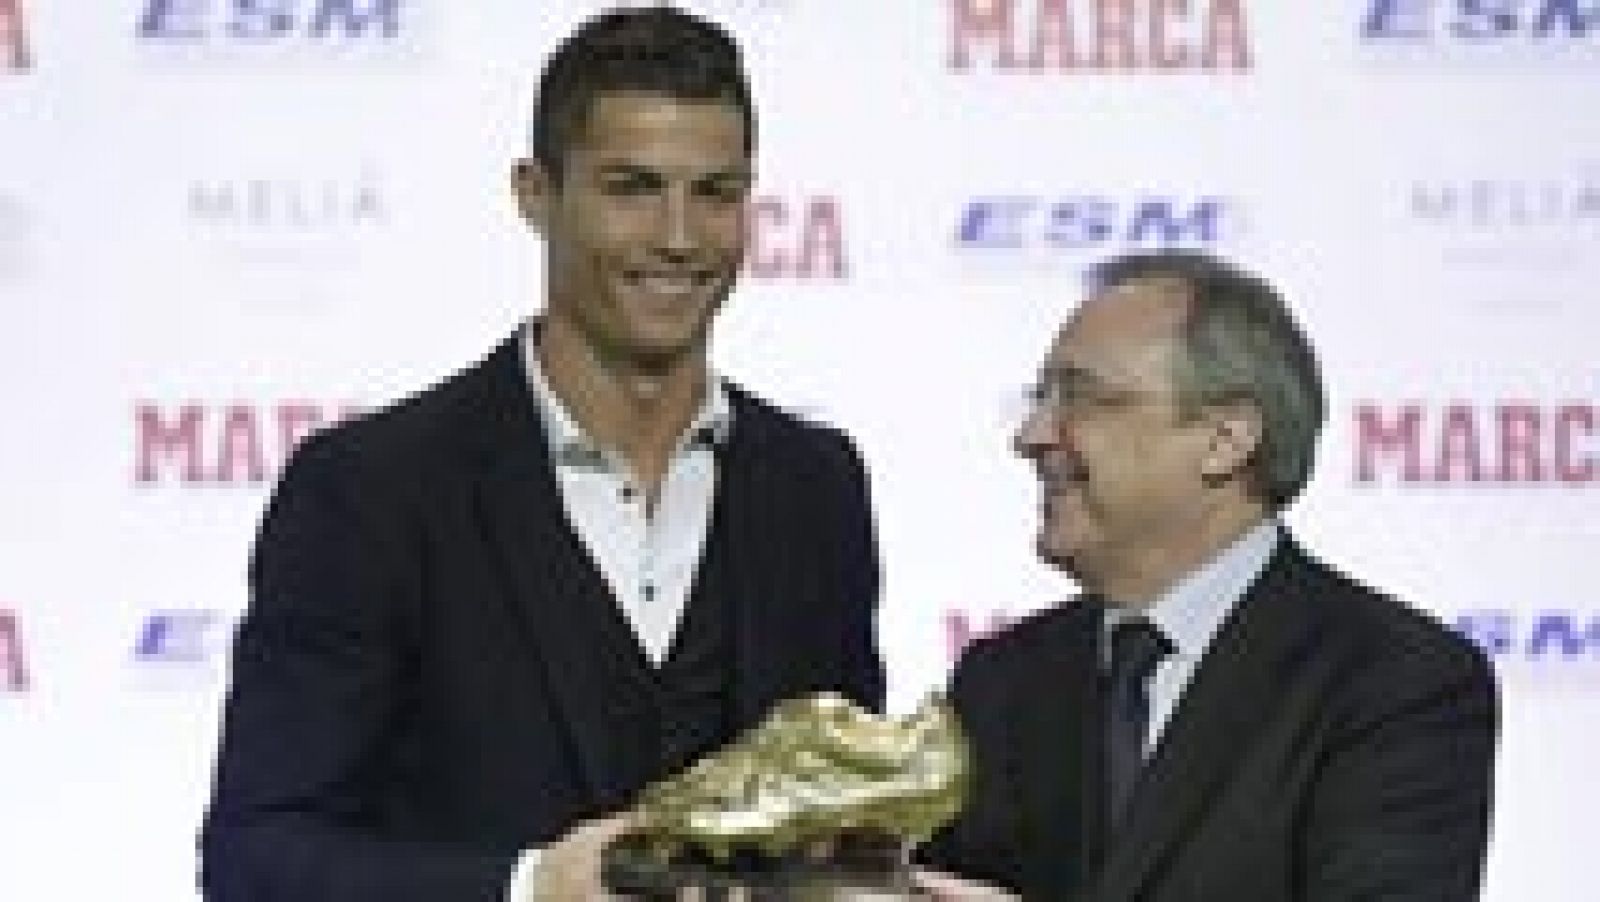 El jugador del Real Madrid Cristiano Ronaldo ha recibido la tercera Bota de Oro de su carrera, gracias a los 31 goles que marcó la temporada pasada, empatado con Luis Suárez. En el acto de entrega del trofeo, Ronaldo ha asegurado que va a "seguir muc